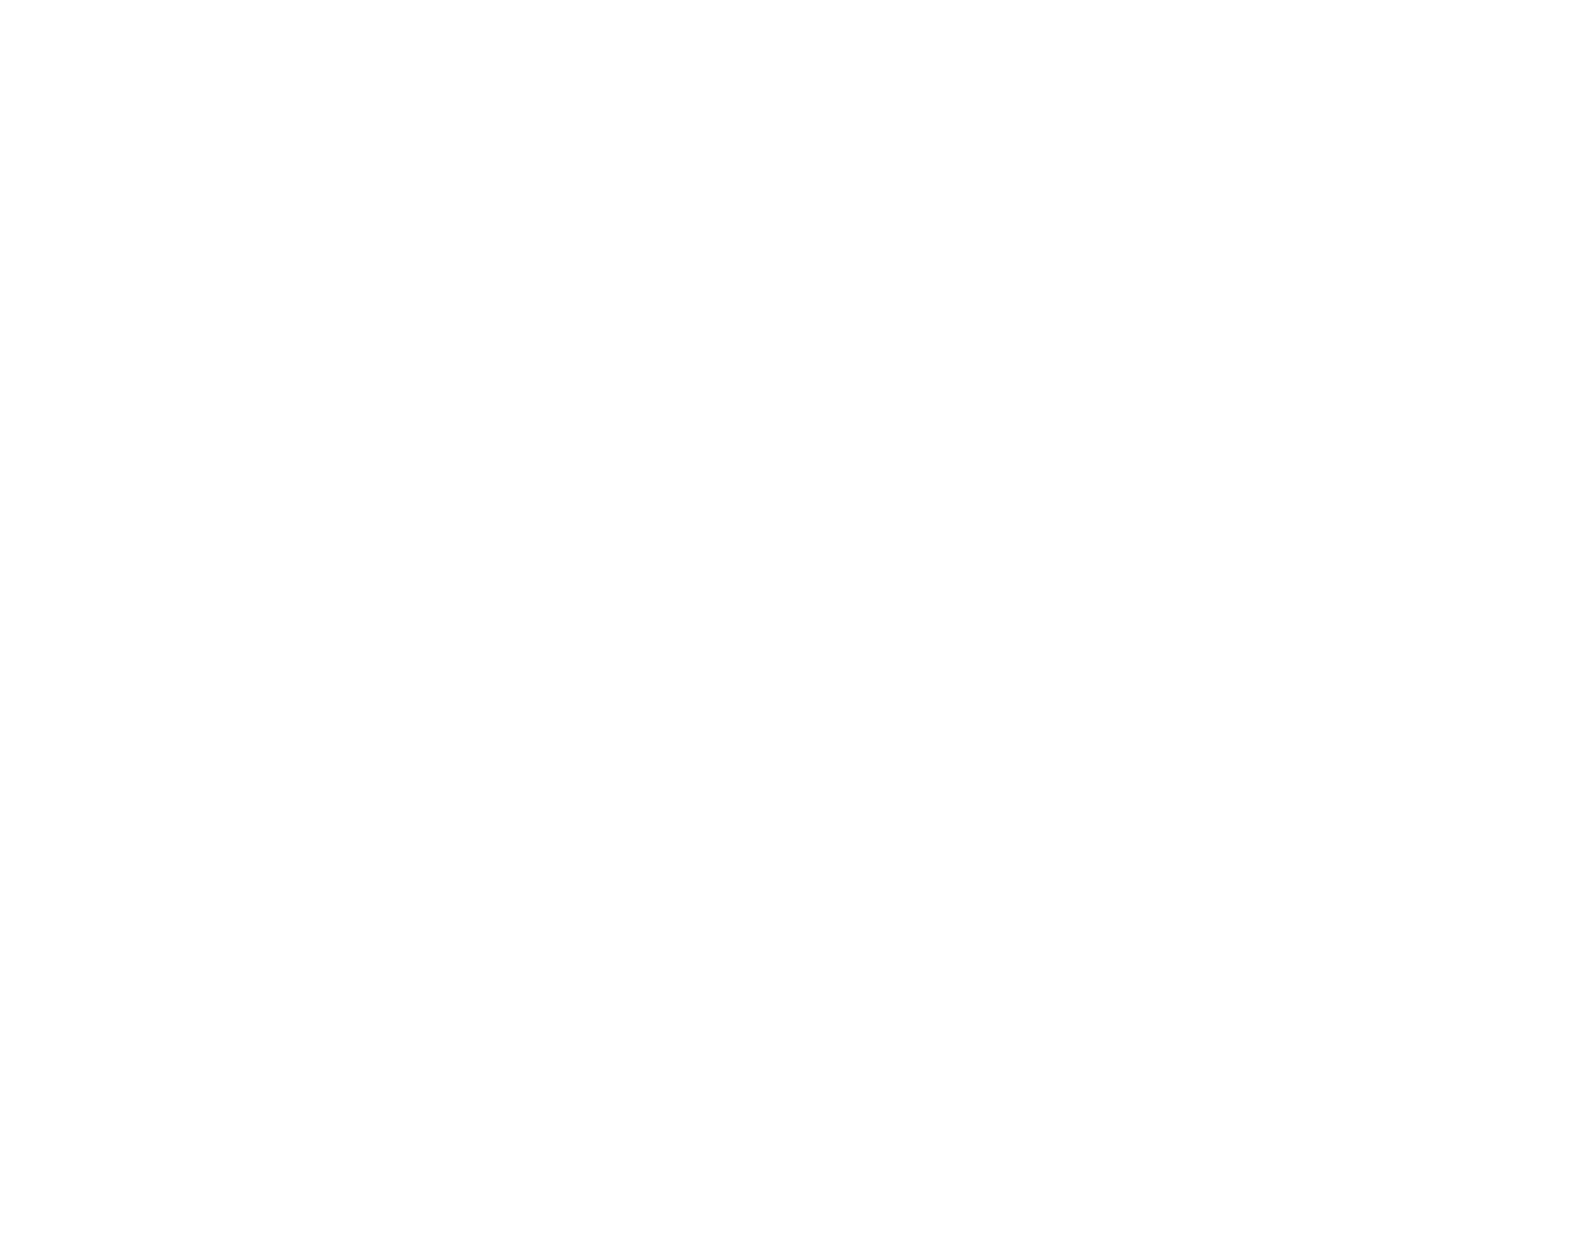 Dechra Pharmaceuticals Logo groß für dunkle Hintergründe (transparentes PNG)